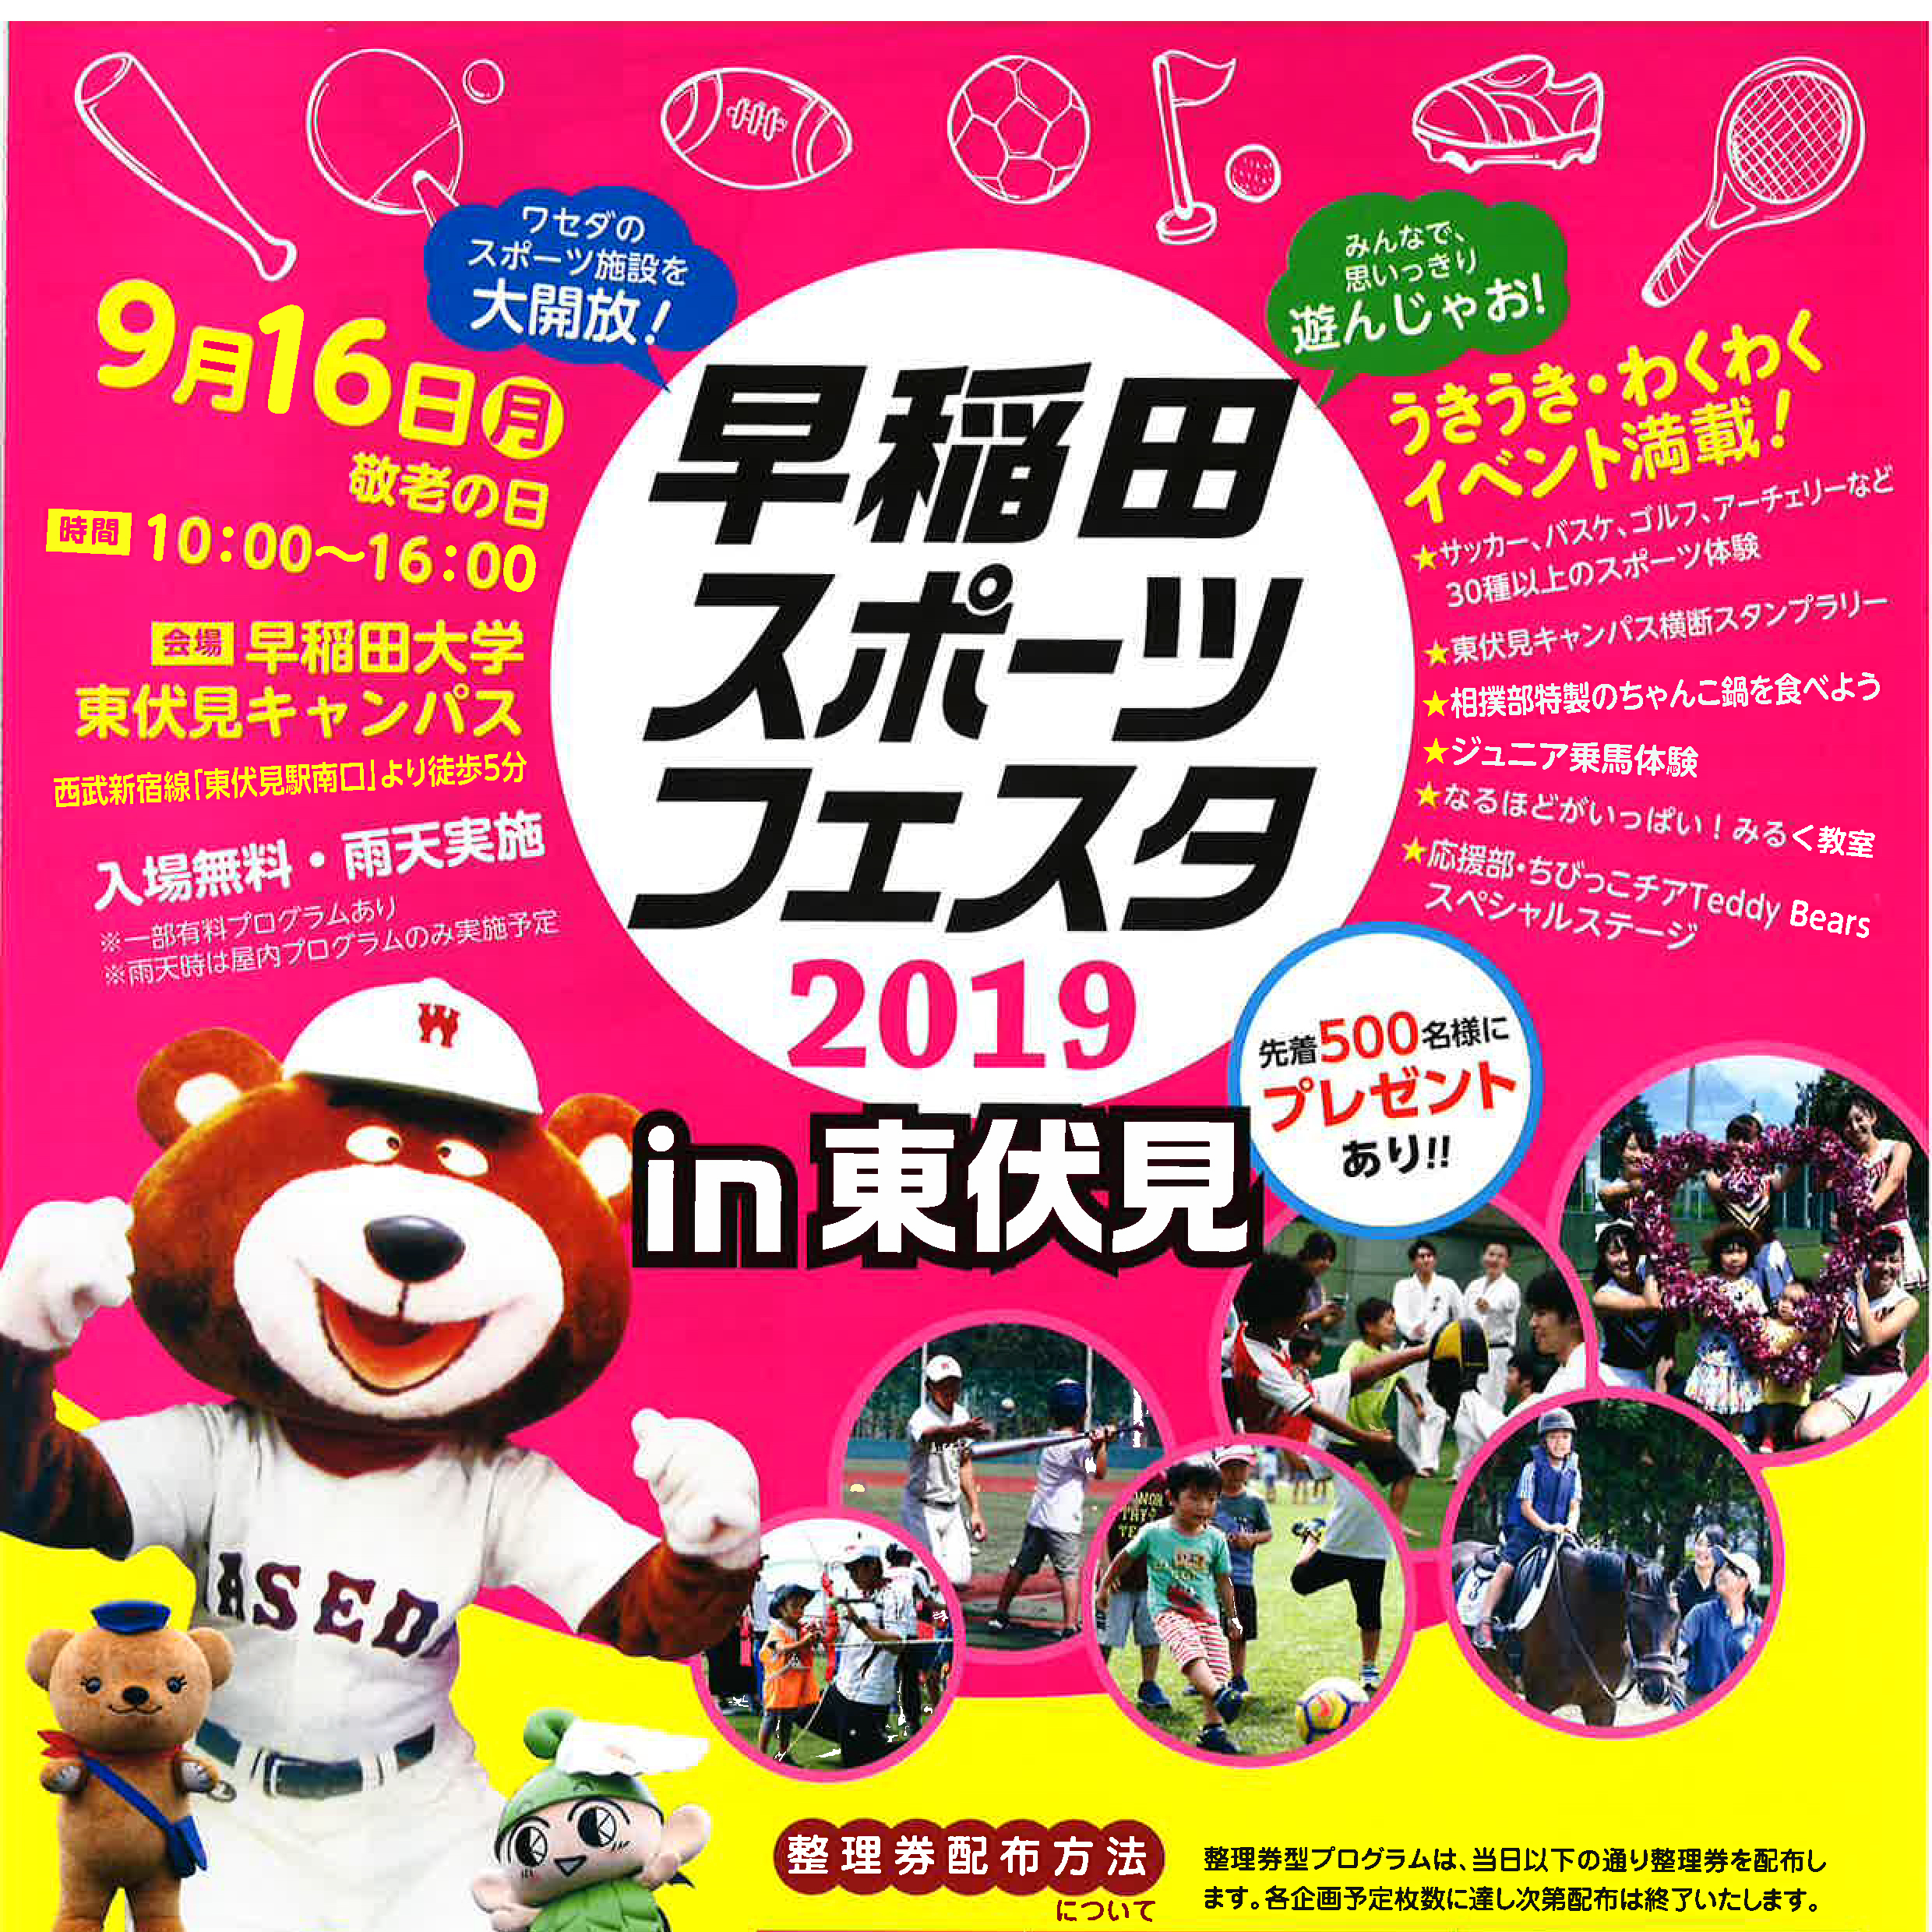 2019 早稲田スポーツフェスタ開催のお知らせ